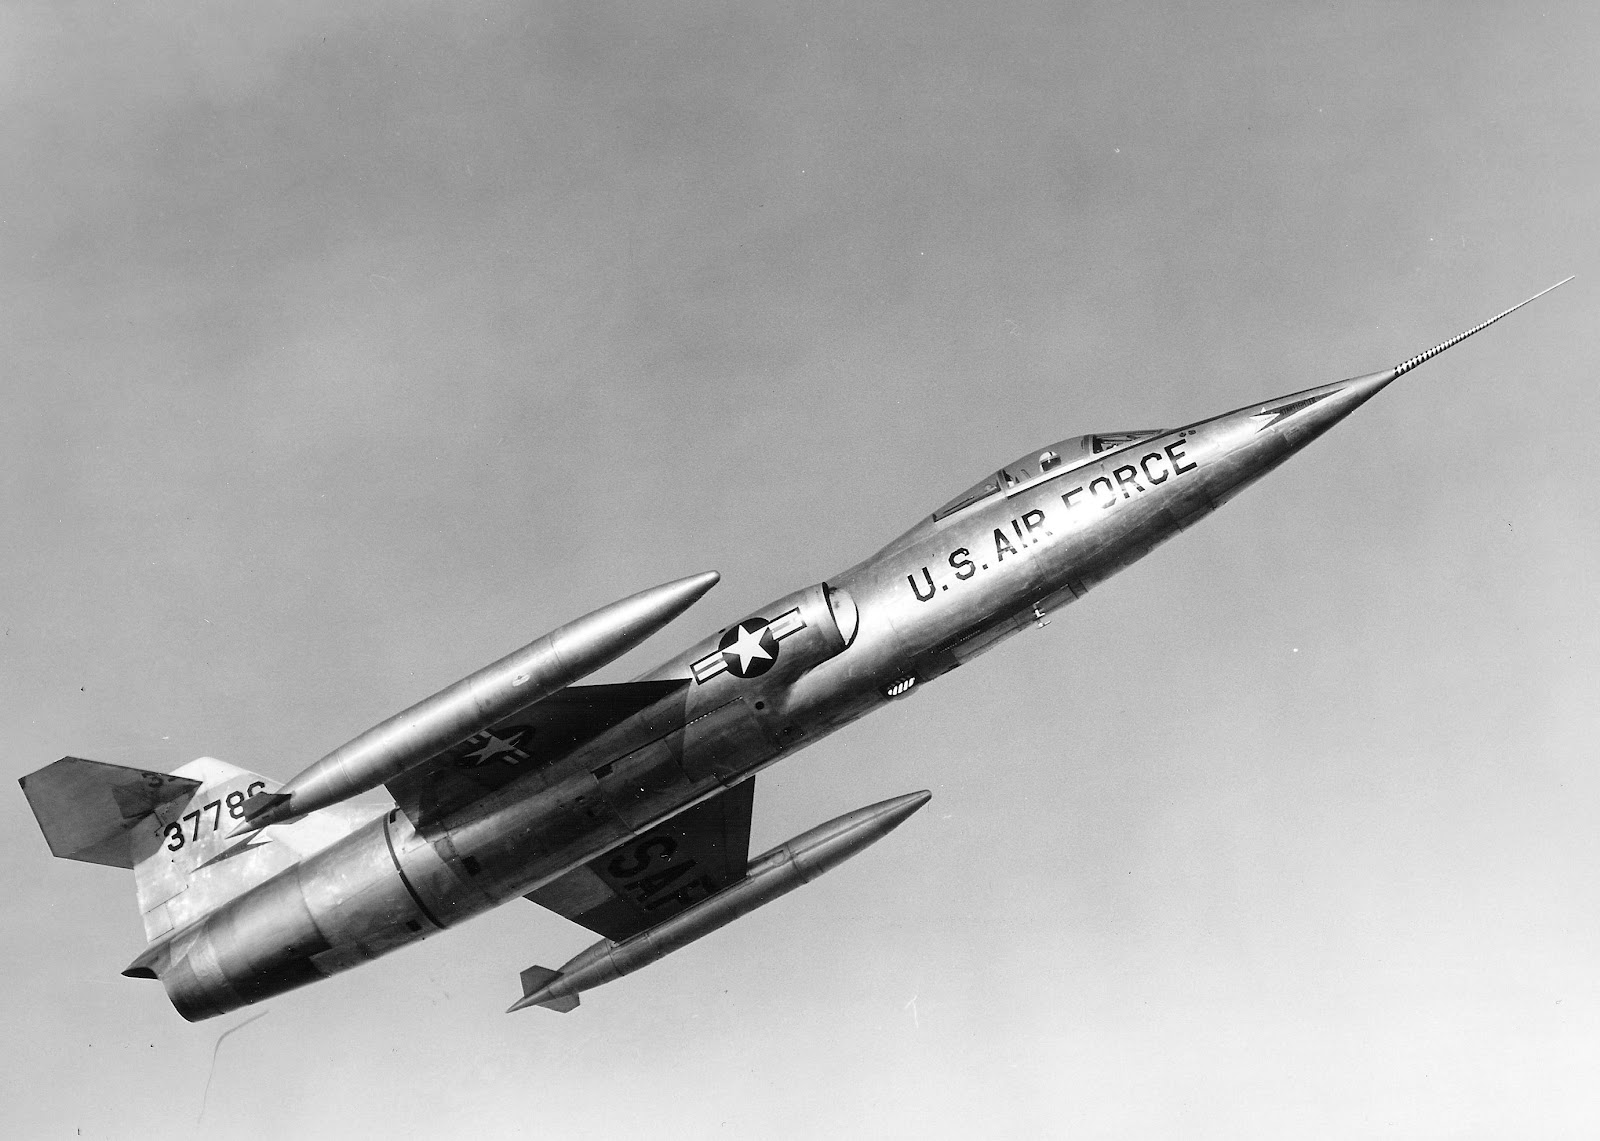 Lockheed XF-104 55-7786. (Lockheed Martin)